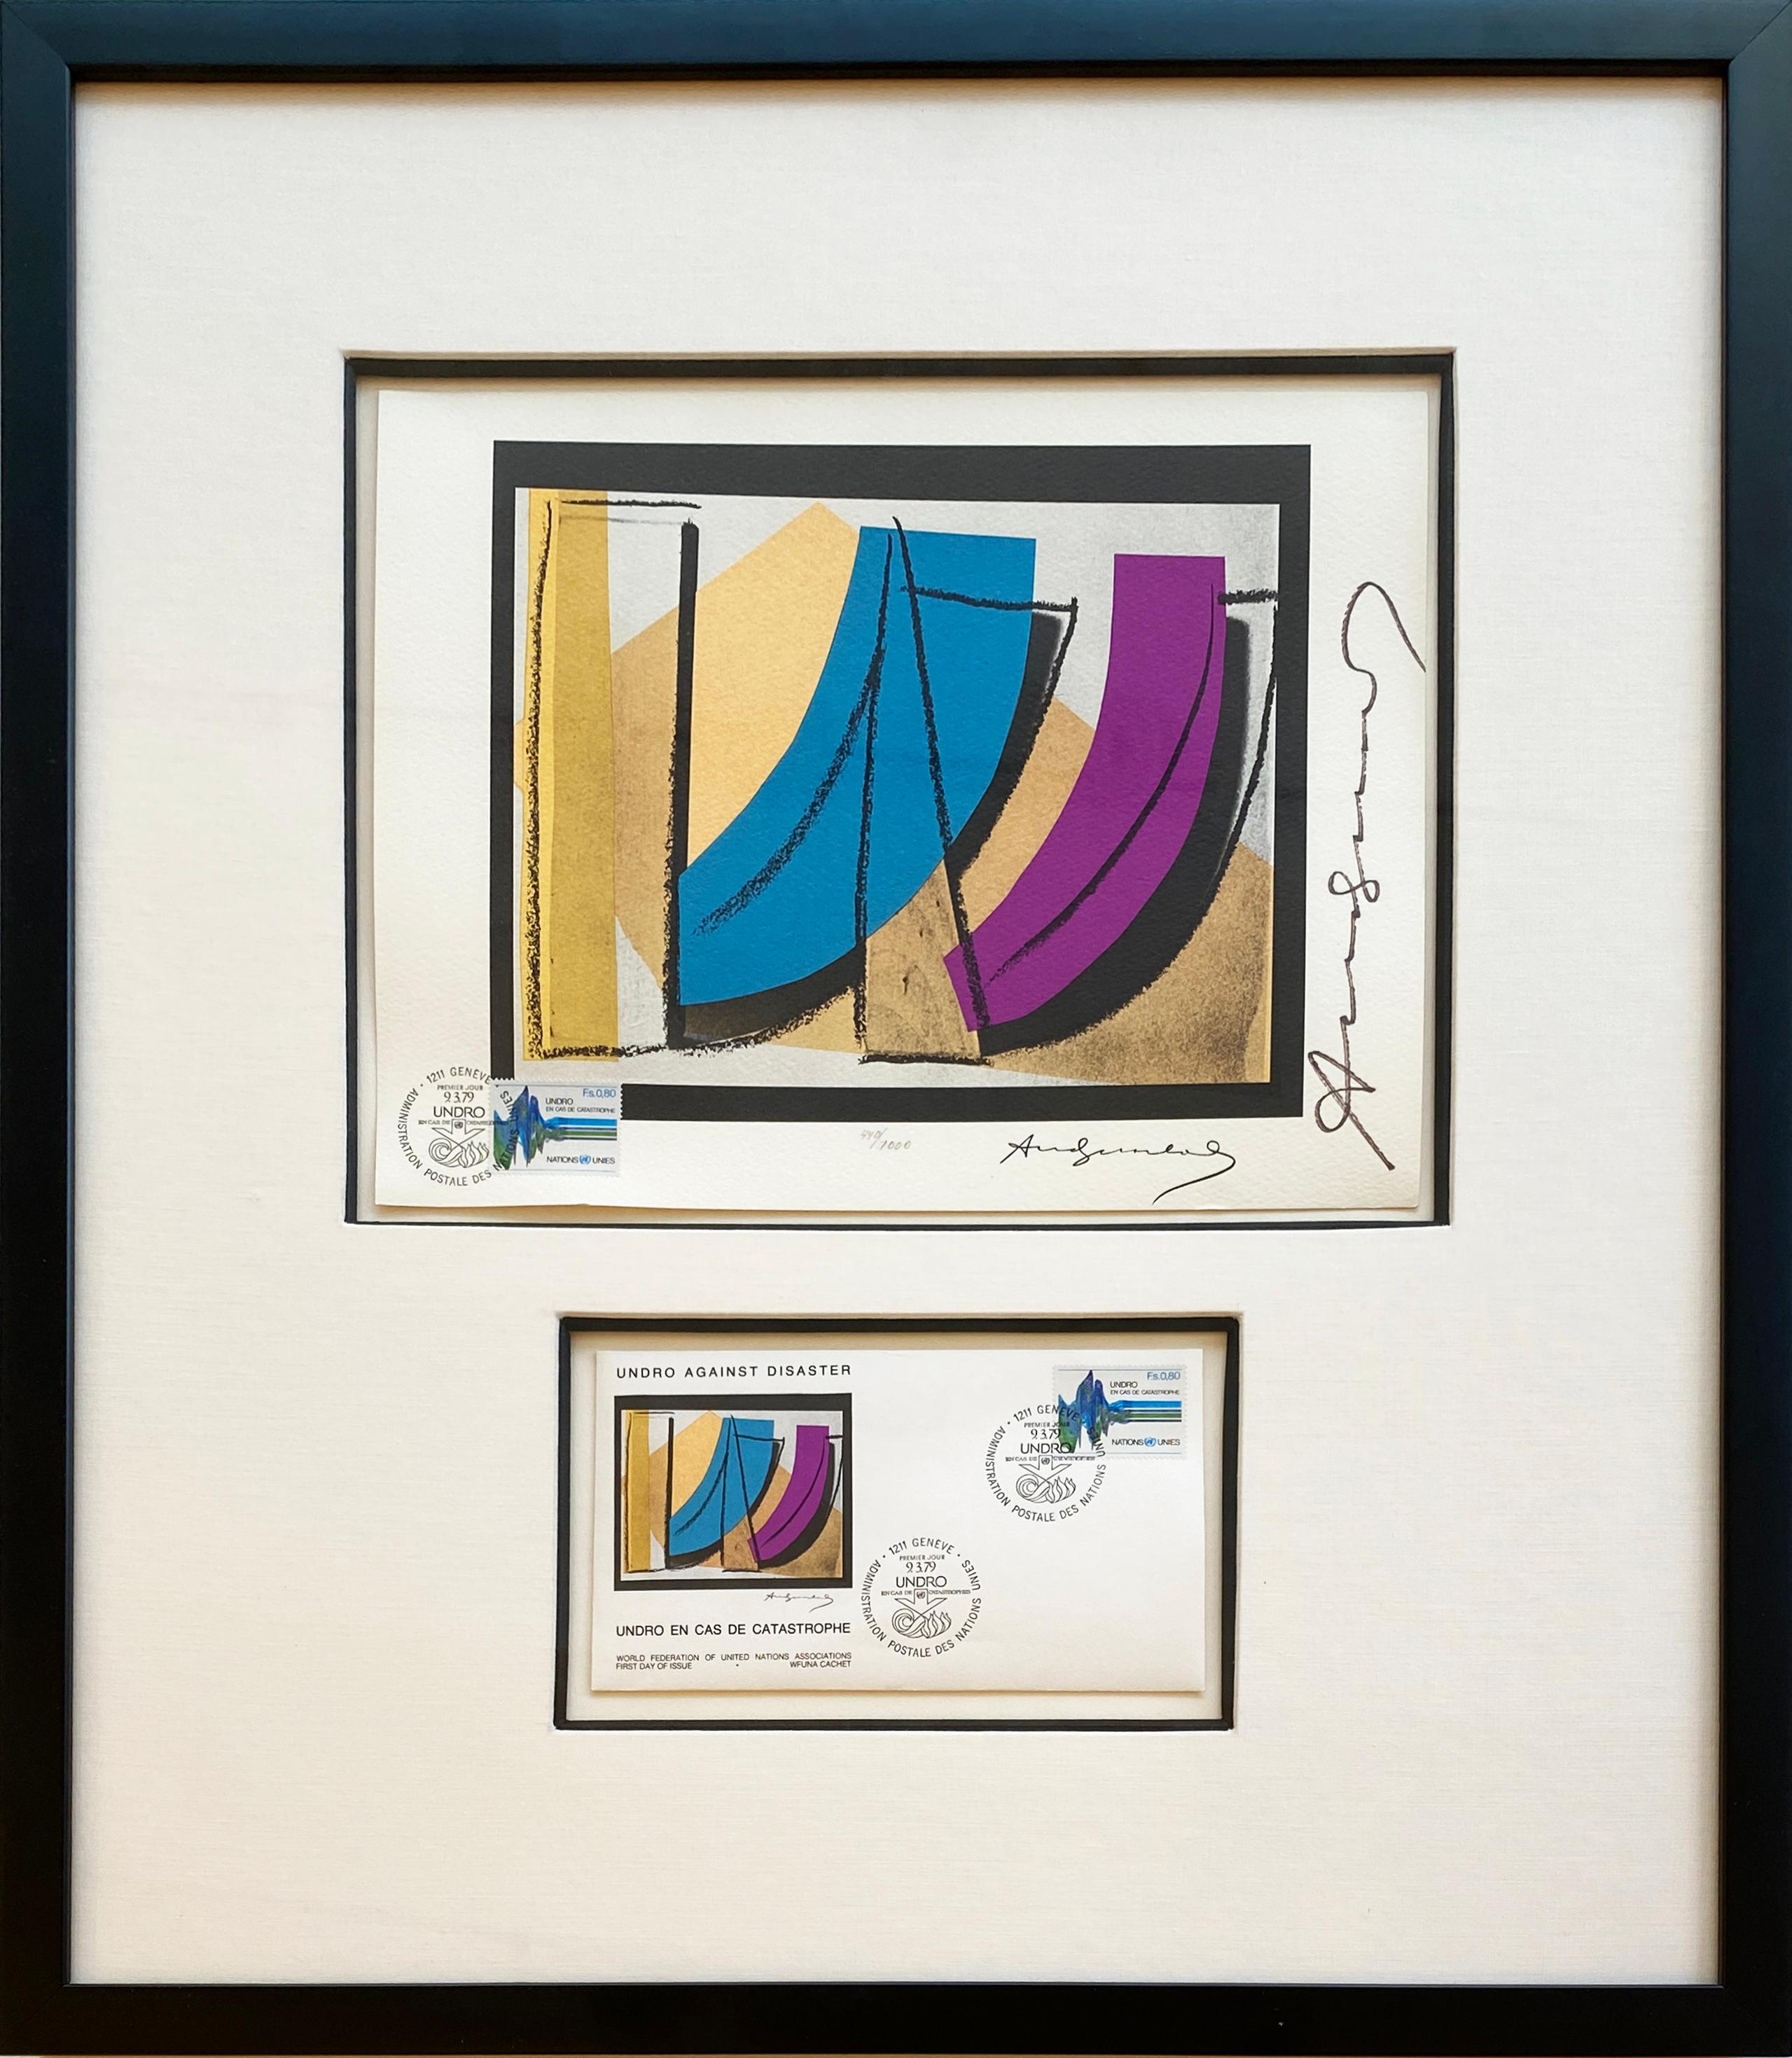 Andy Warhol
U.N. Stempel, II.185, 1979
Offsetlithografie auf Rives-Papier
8 1/2 x 11 Zoll
Aus der Auflage von 1000 Stück, geschrieben am unteren Rand
Vom Künstler sowohl in der rechten unteren Ecke als auch am rechten Rand signiert. 